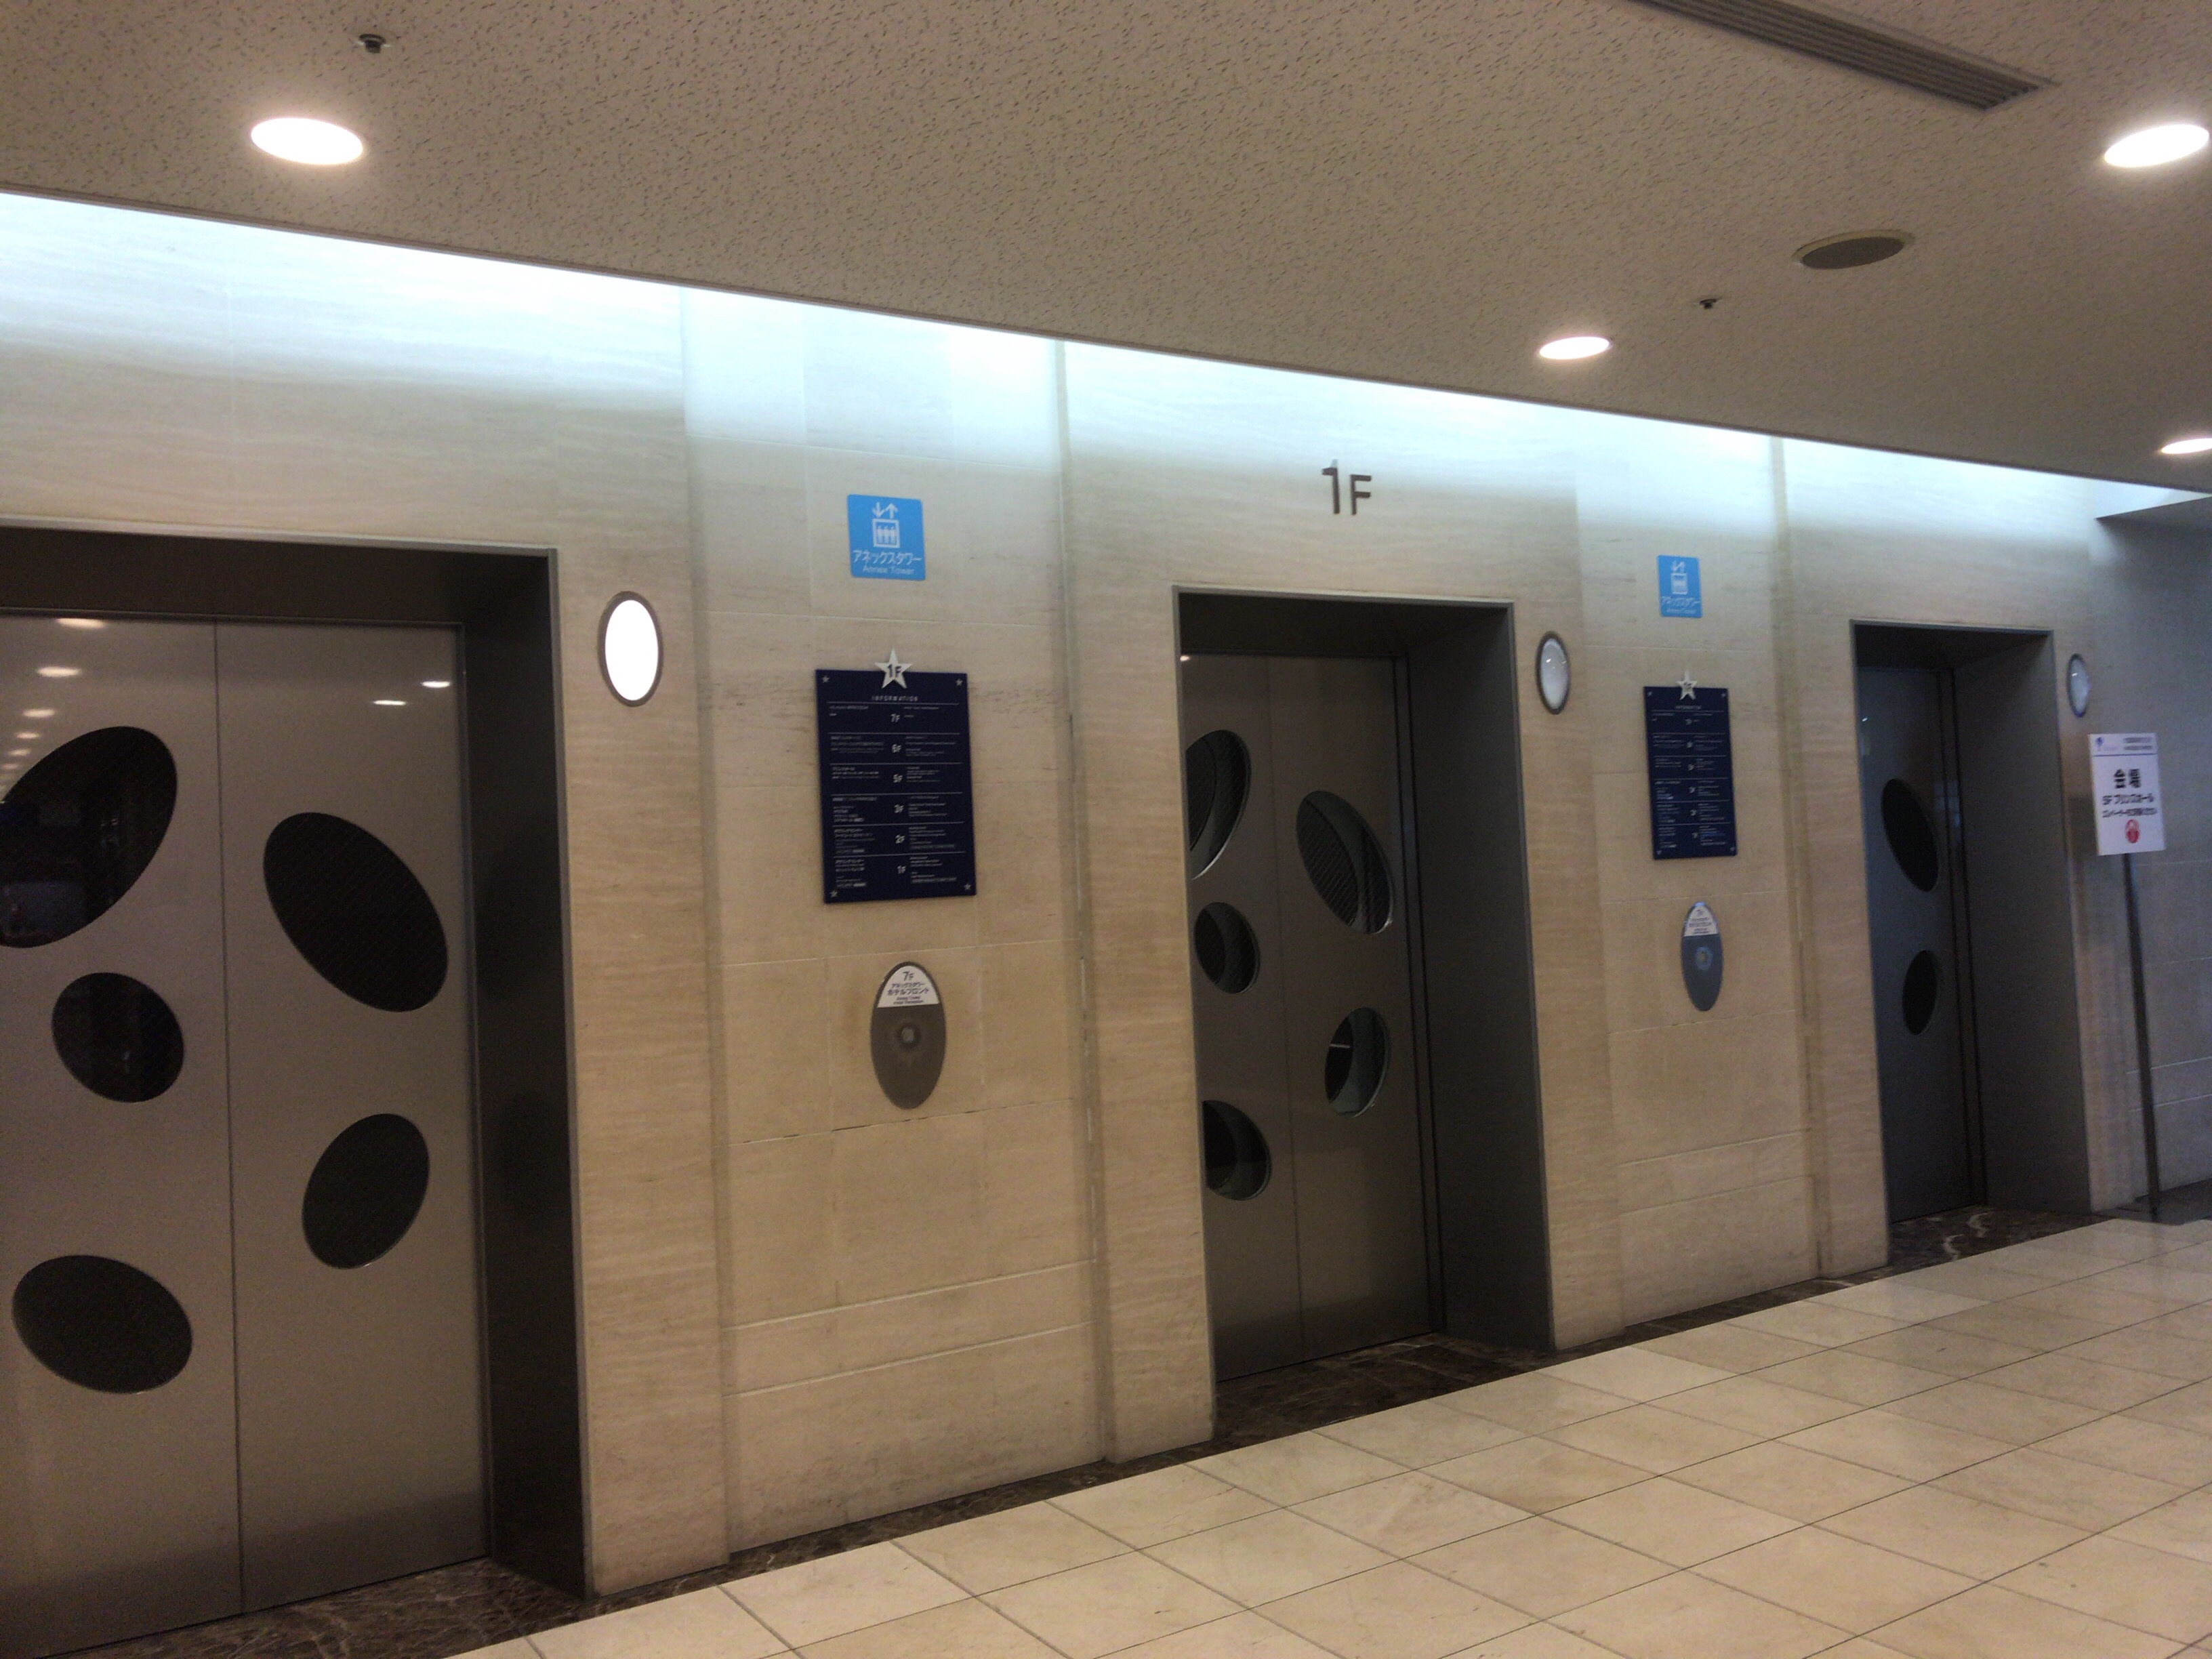 3基あるので、割とすぐ来てくれます。エレベーターの場所は一か所なので、アネックスタワーに入ったら、表示に従ってエレベーターを目指せばＯＫです。なお、徒歩の方は、エスカレーターがあるので、エスカレーターで３Ｆまで上がって下さい。